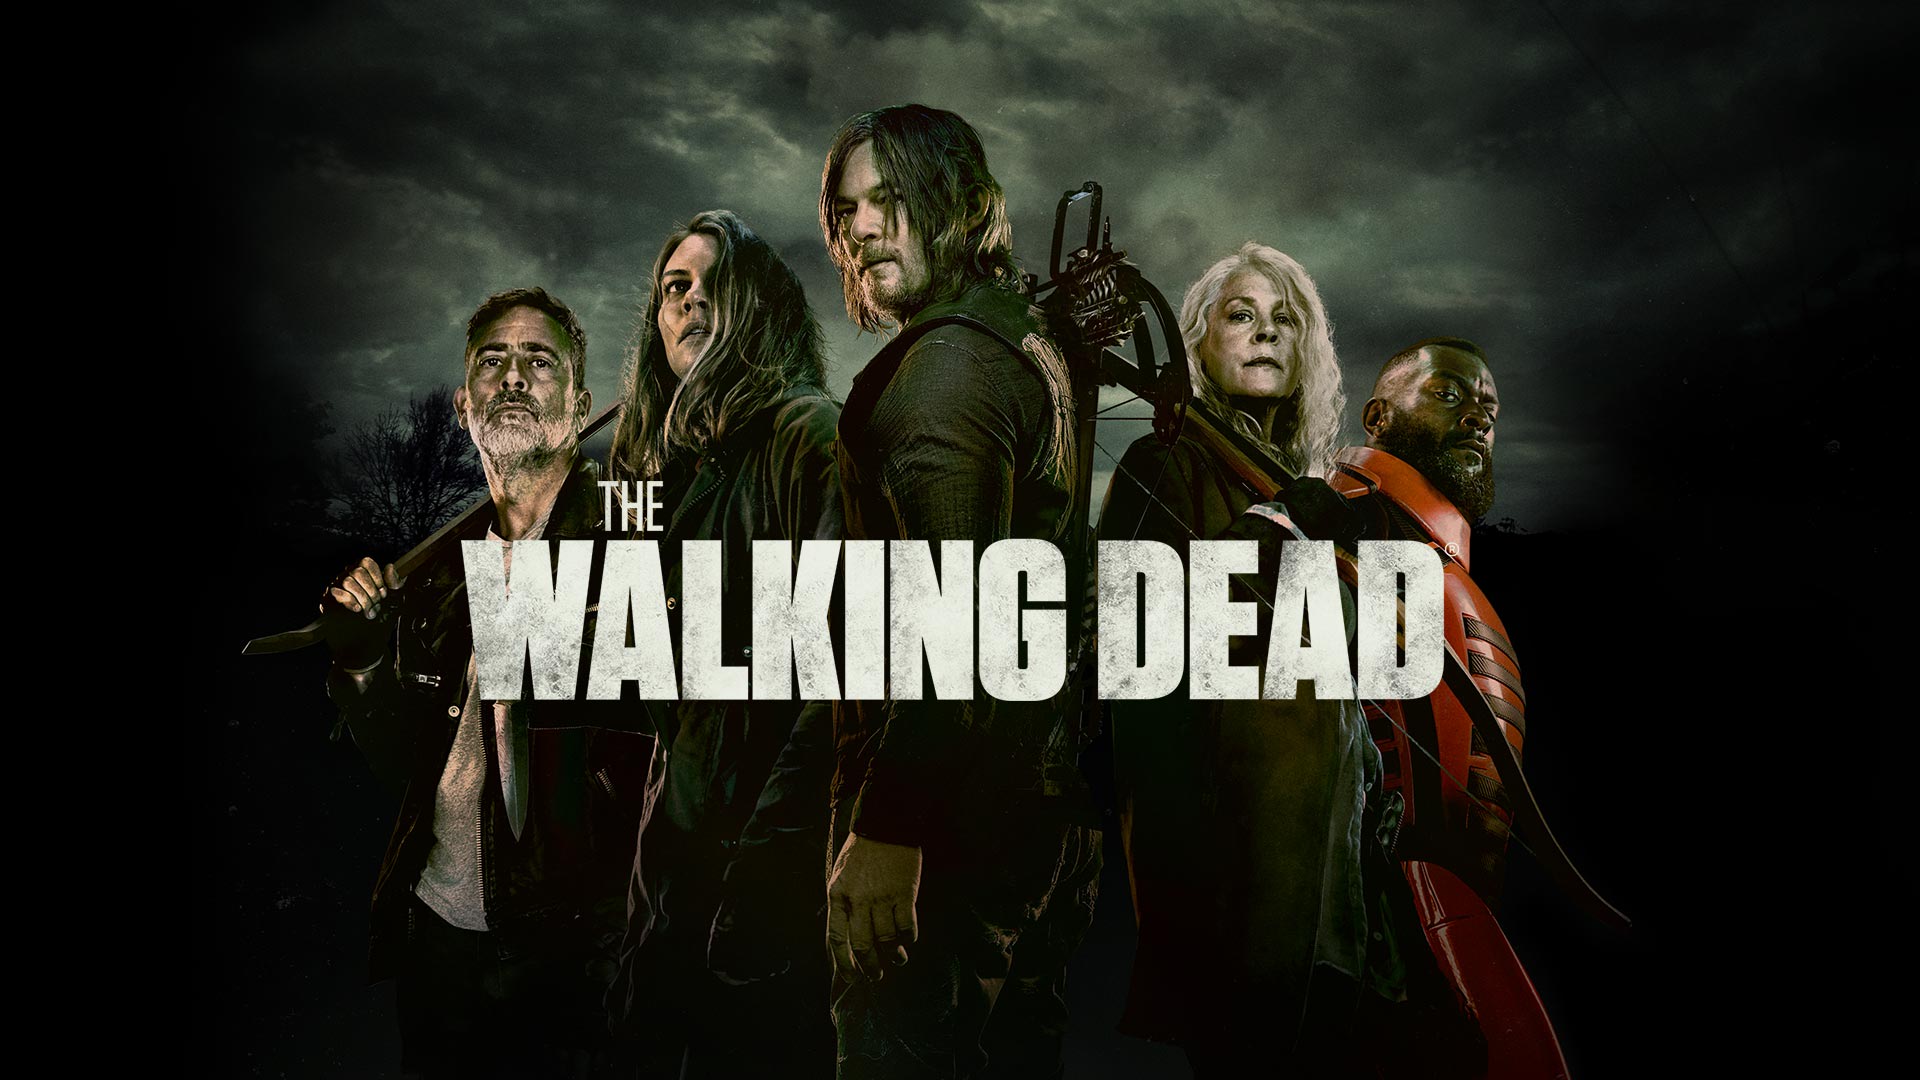 The walking dead season 11 episode 10